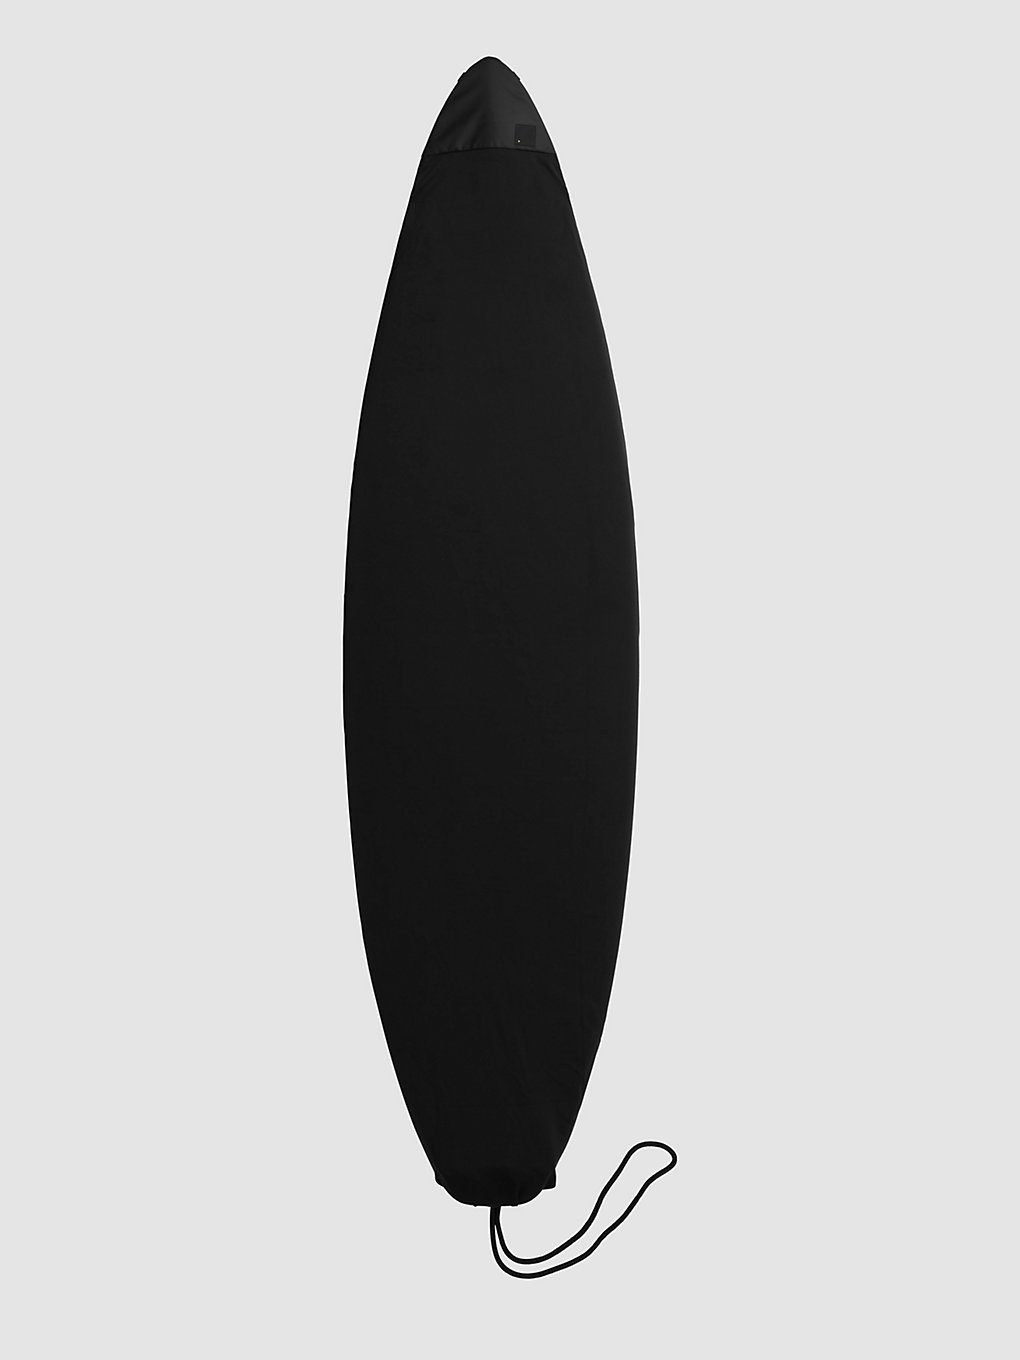 Db Surf Sock 5'8" Stab Ltd Surfboard-Tasche stab ltd